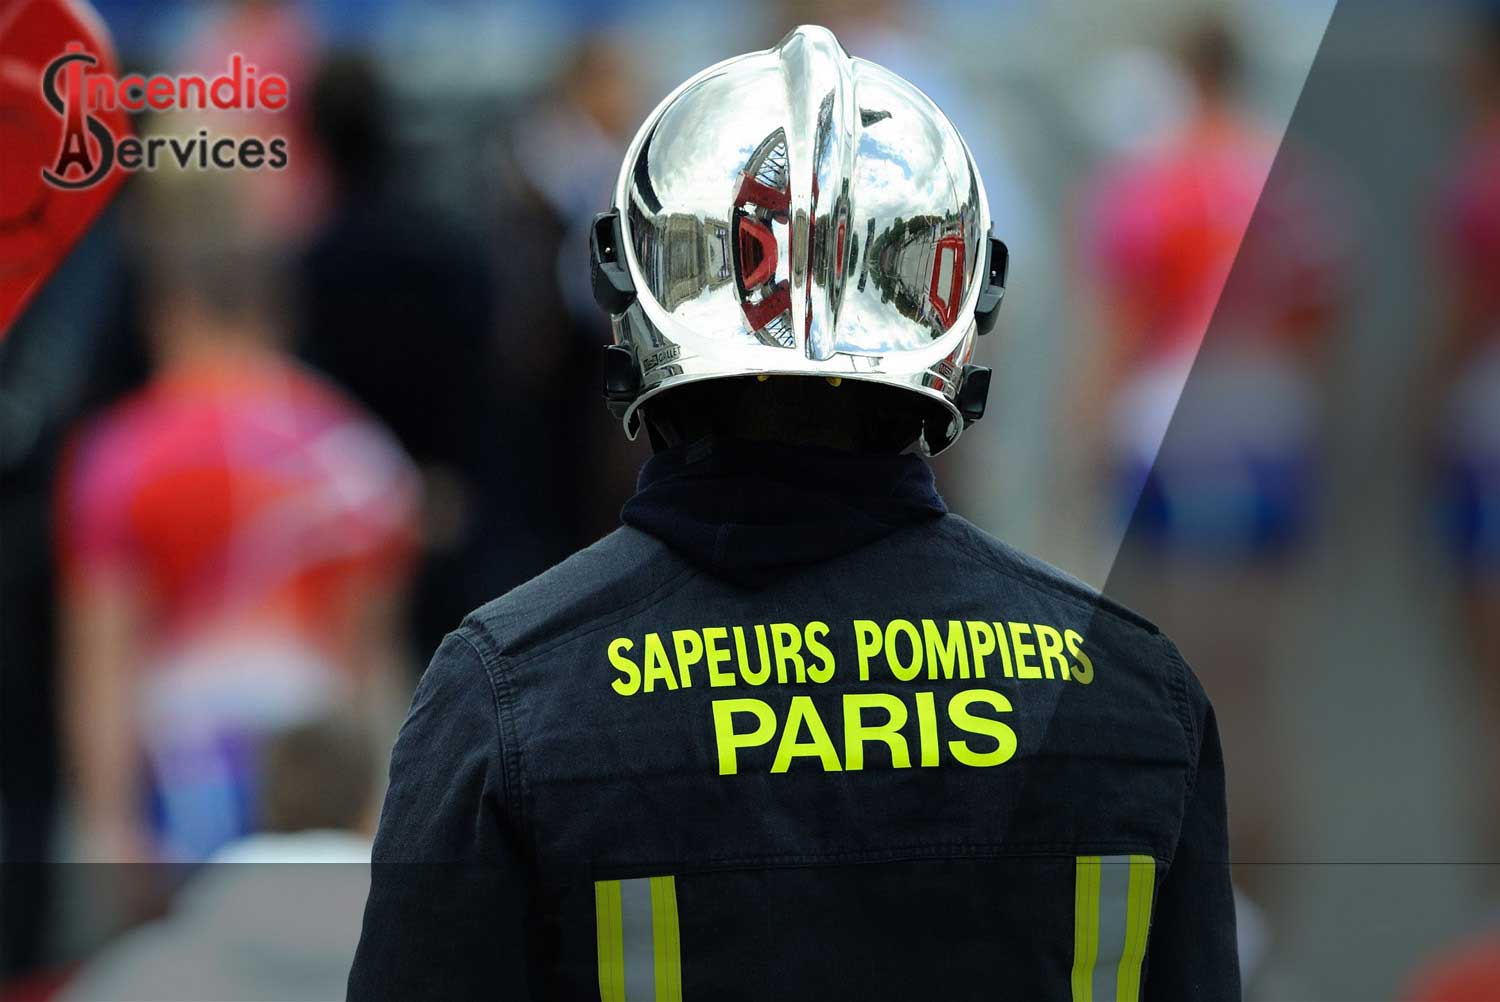 MAINTENANCE EXTINCTEUR PARIS 9 - Entreprise Certifiée | Incendie Services à Paris 75009